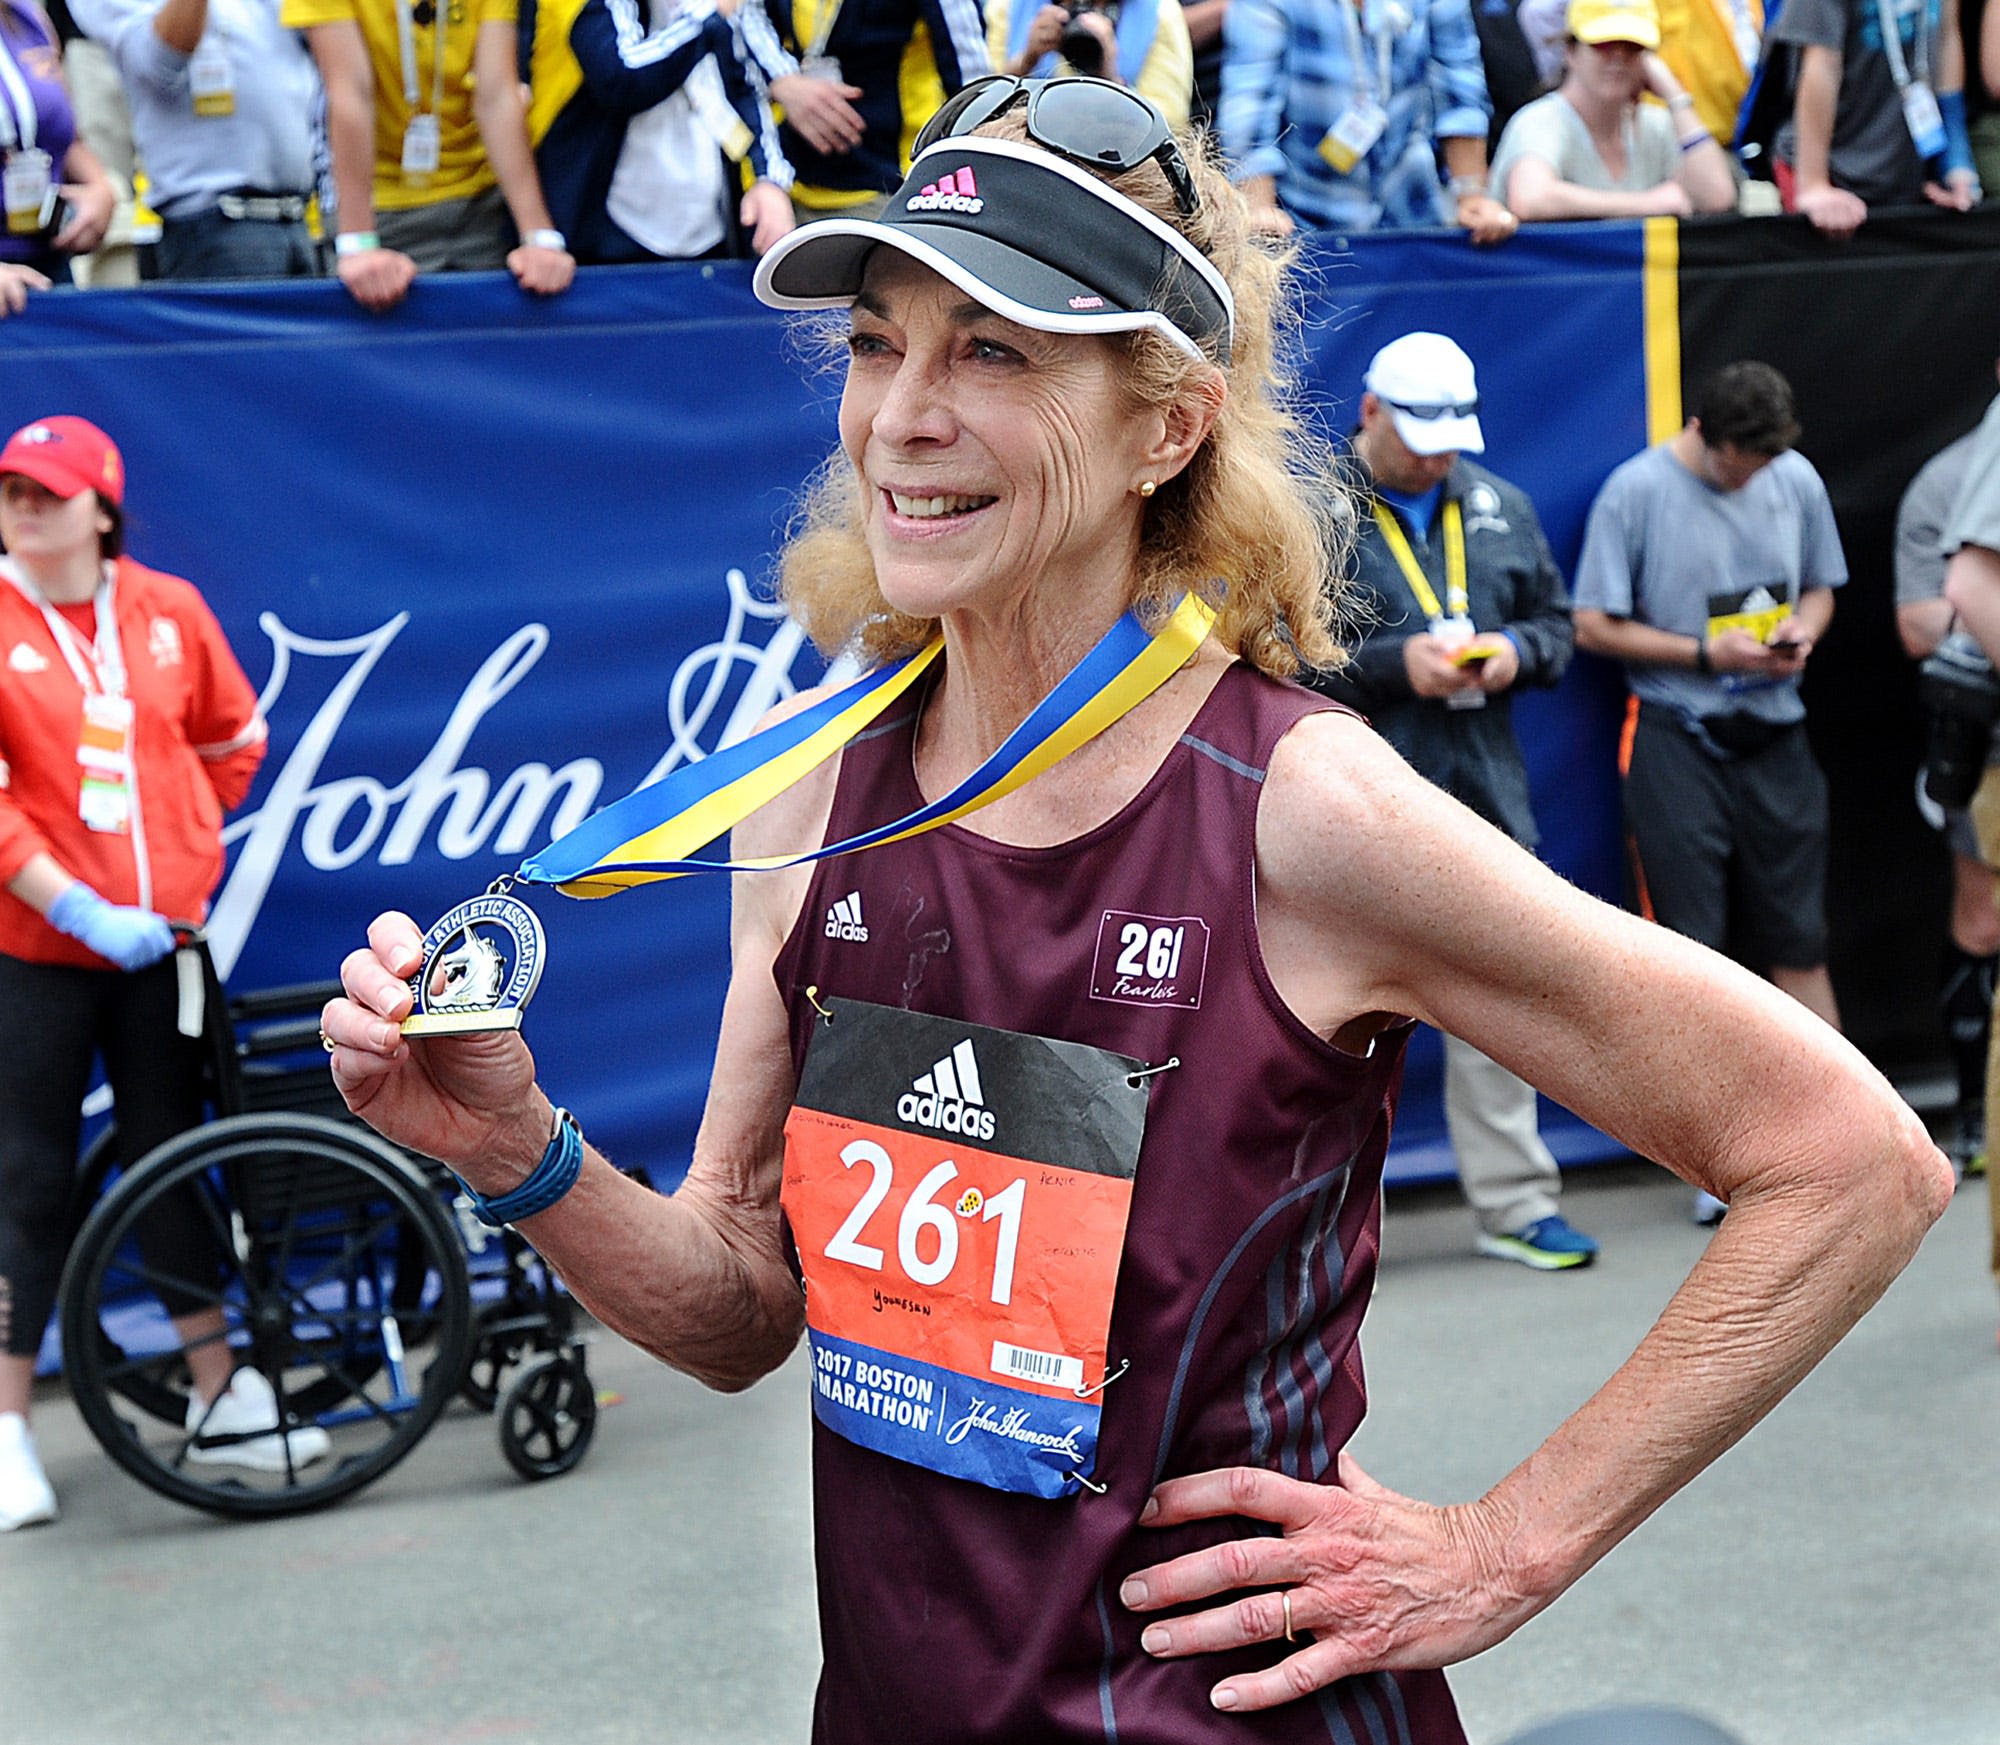 Pioneering women marathon runners like Kathrine Switzer motivated me to keep running